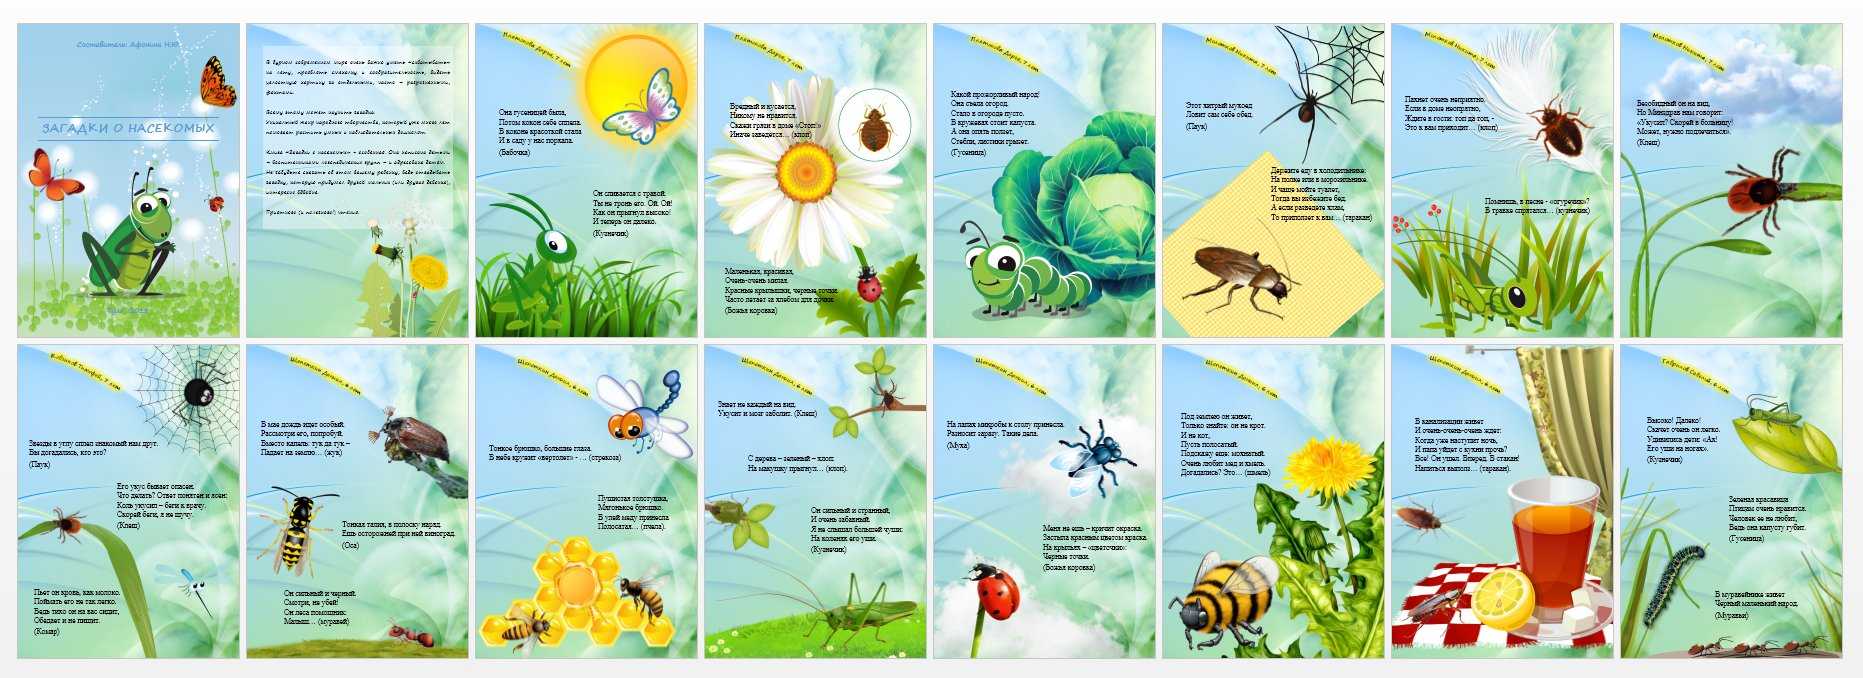 Загадки про насекомых для детей 5. Загадки про насекомых для детей 6-7. Загадки про насекомых для детей. Загадки про насекомых для дошкольников. Загадки для детей про насекомых с ответами.